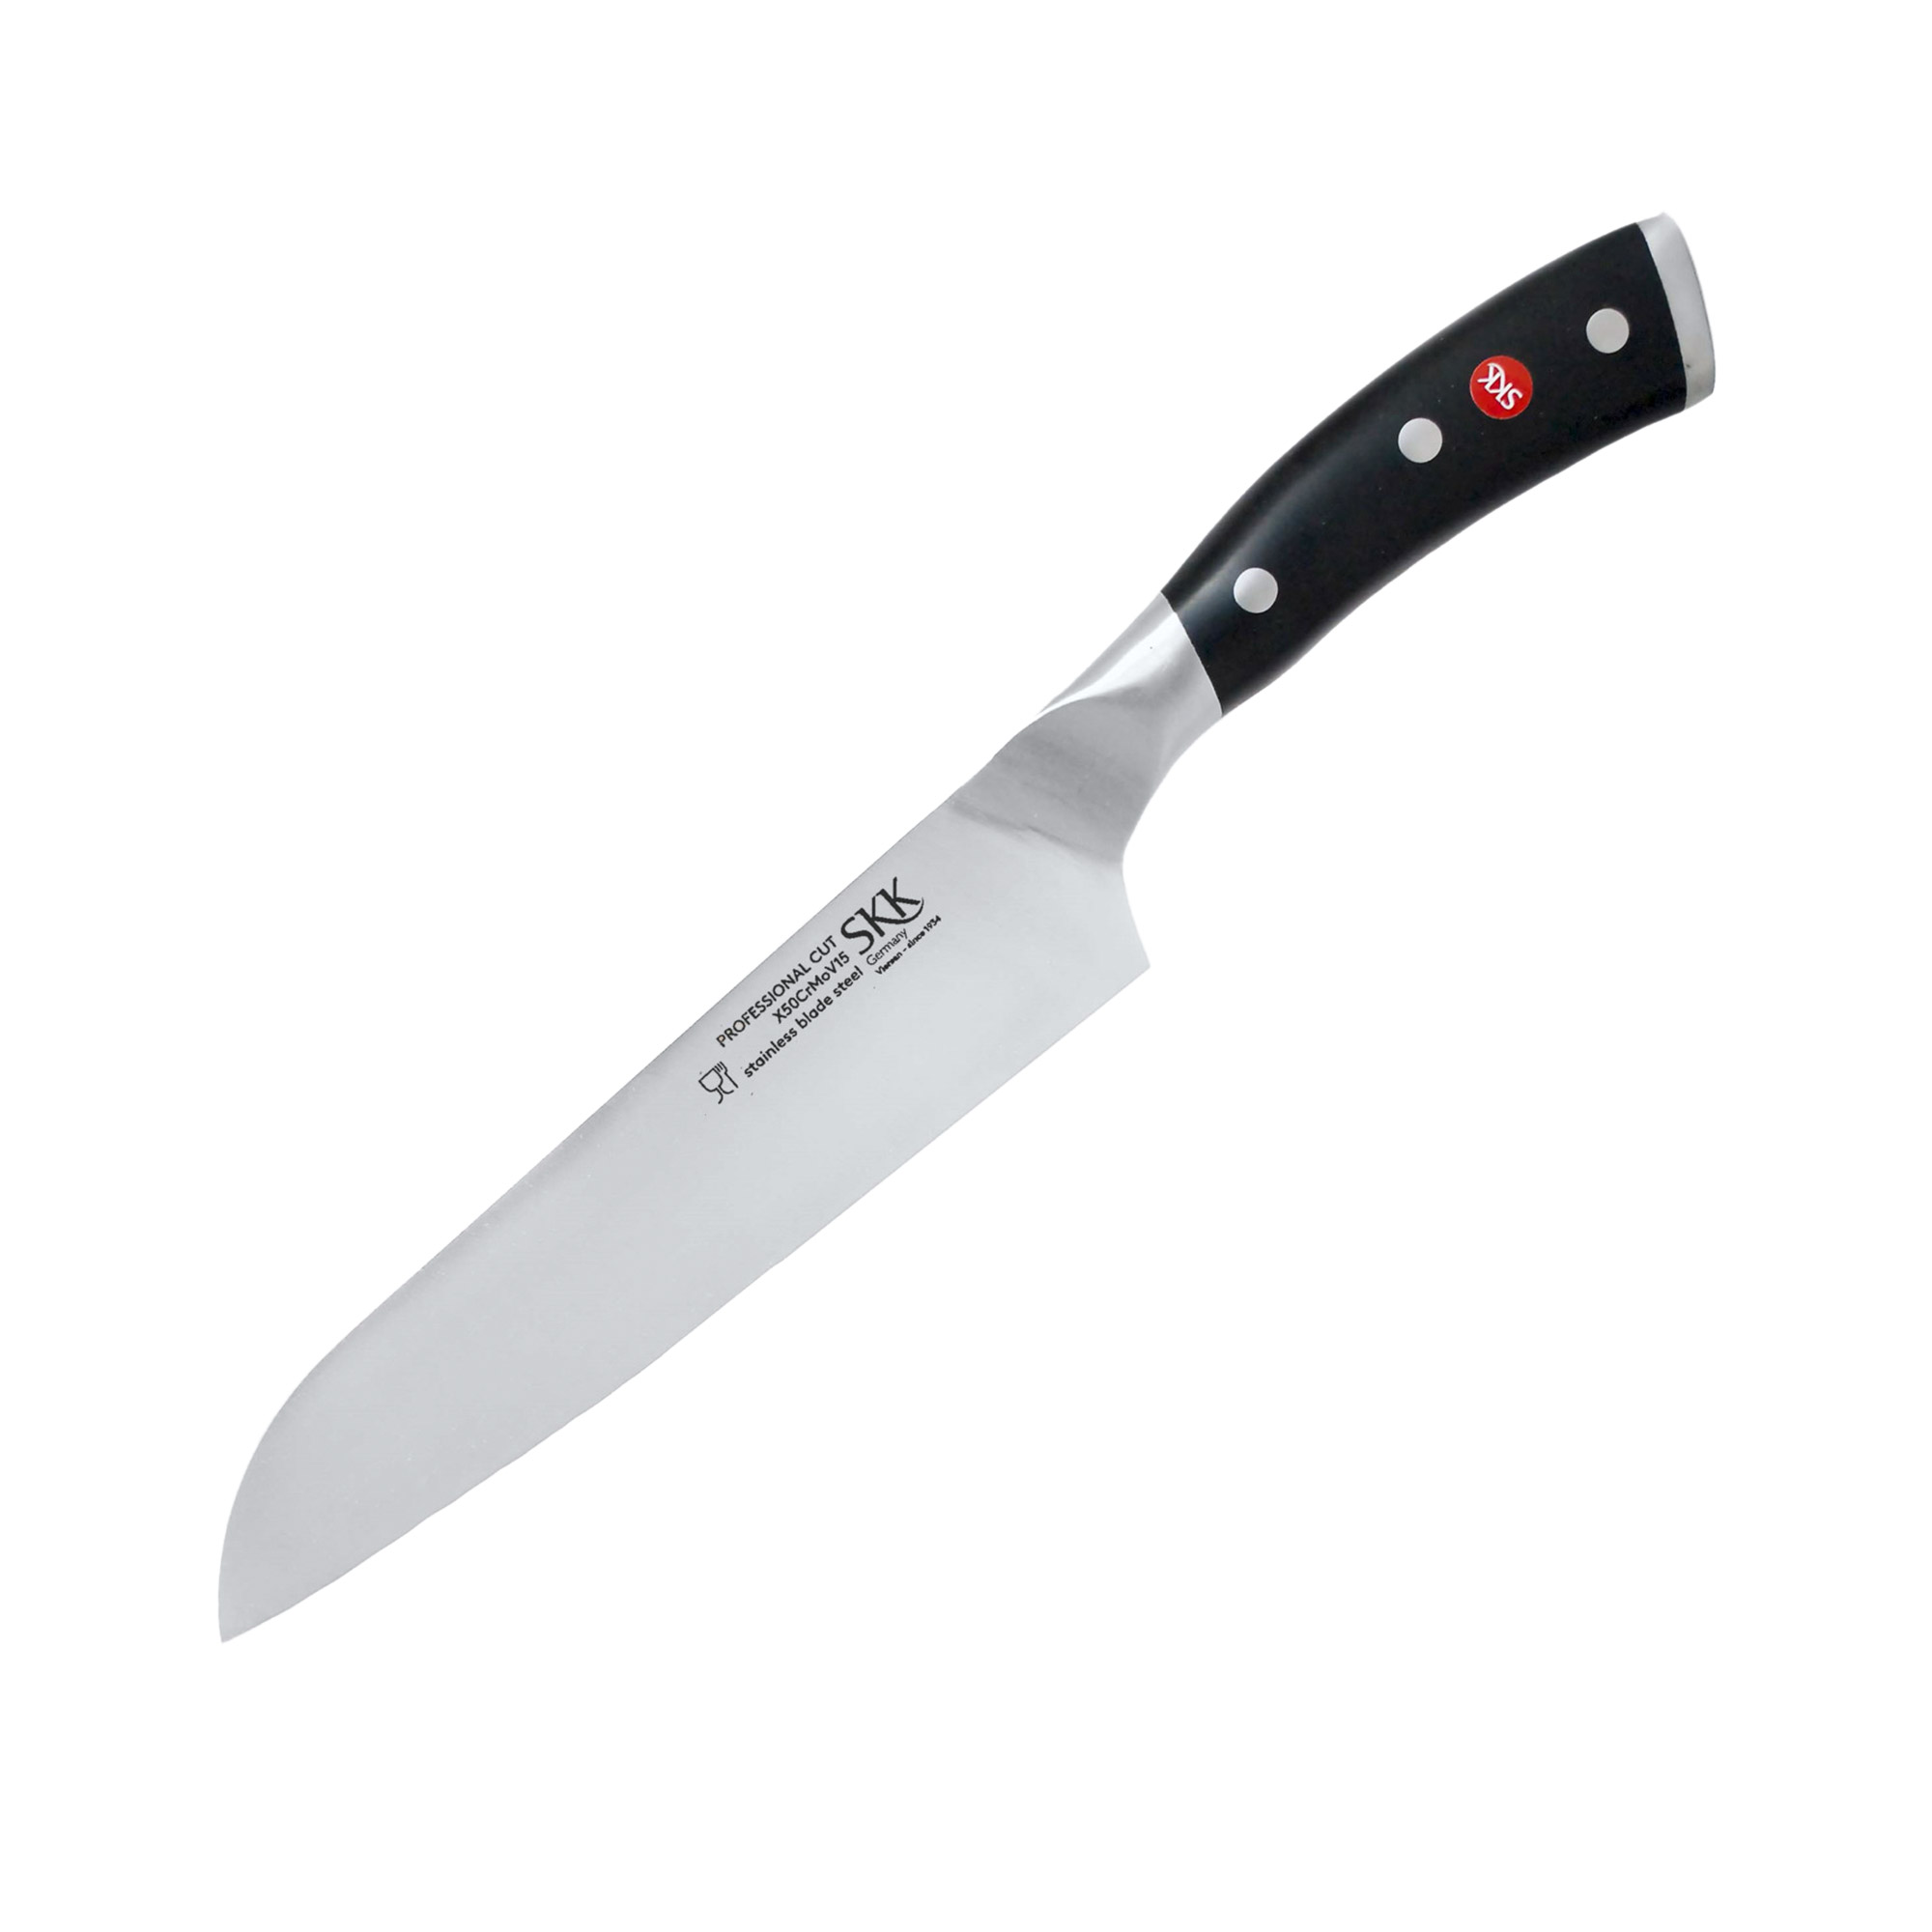 Нож сантоку Skk Professional 17 см блистер нож сантоку hausmade